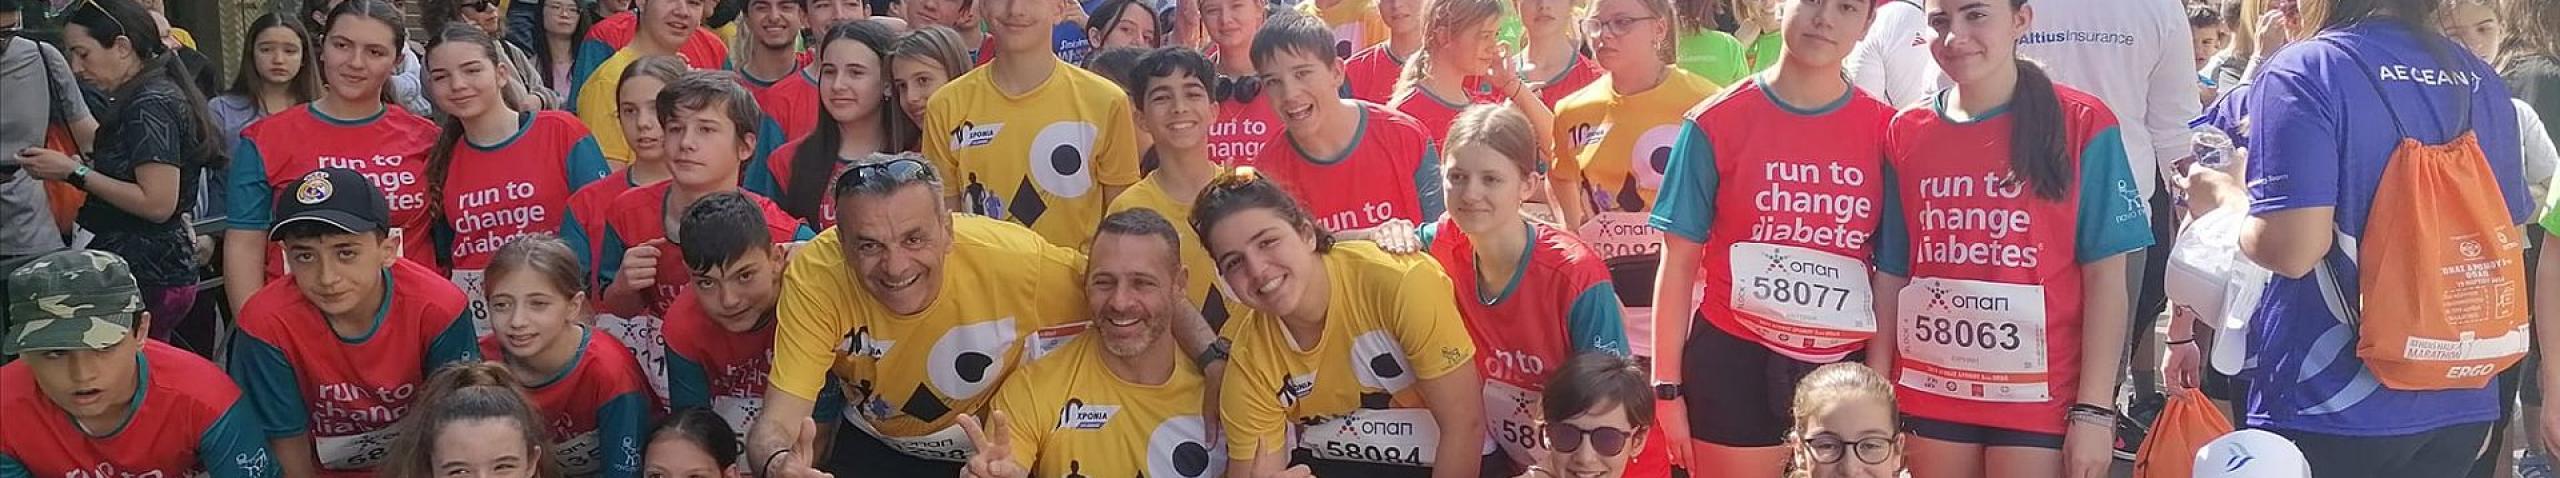 11. Teilnahme des Running-Teams der Deutschen Schule Athen am Athener Halbmarathon 